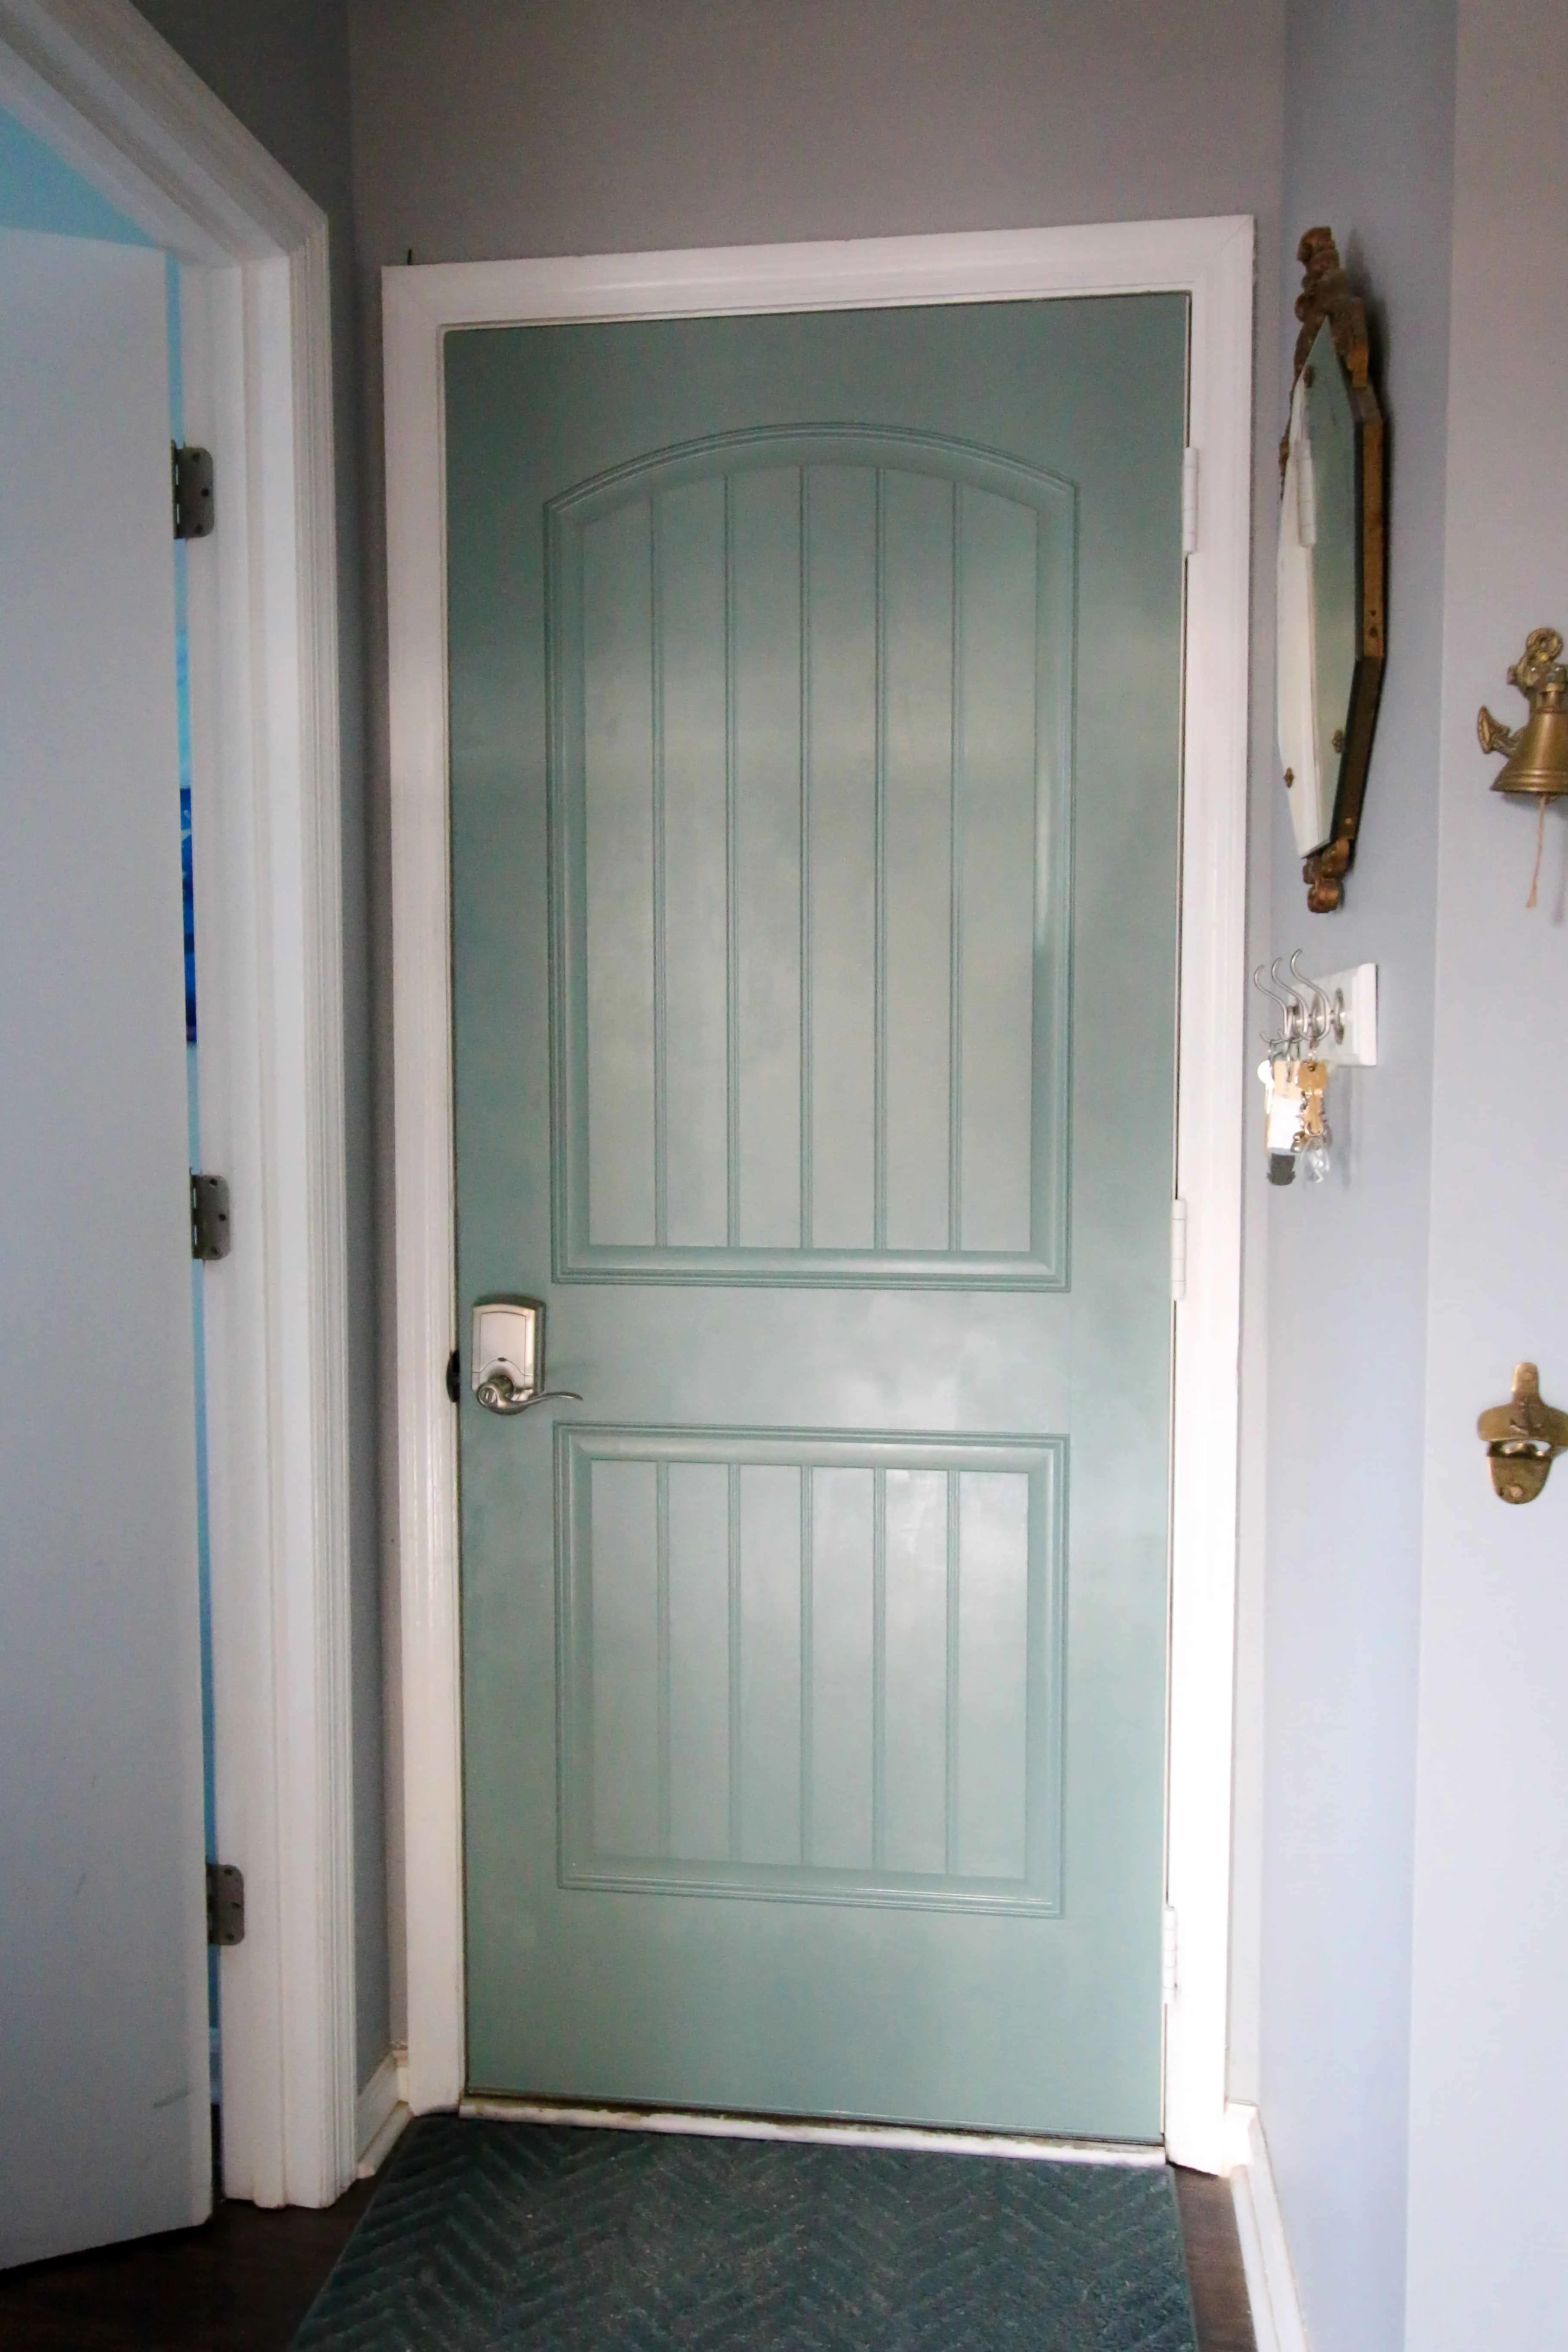 How To Paint a Door